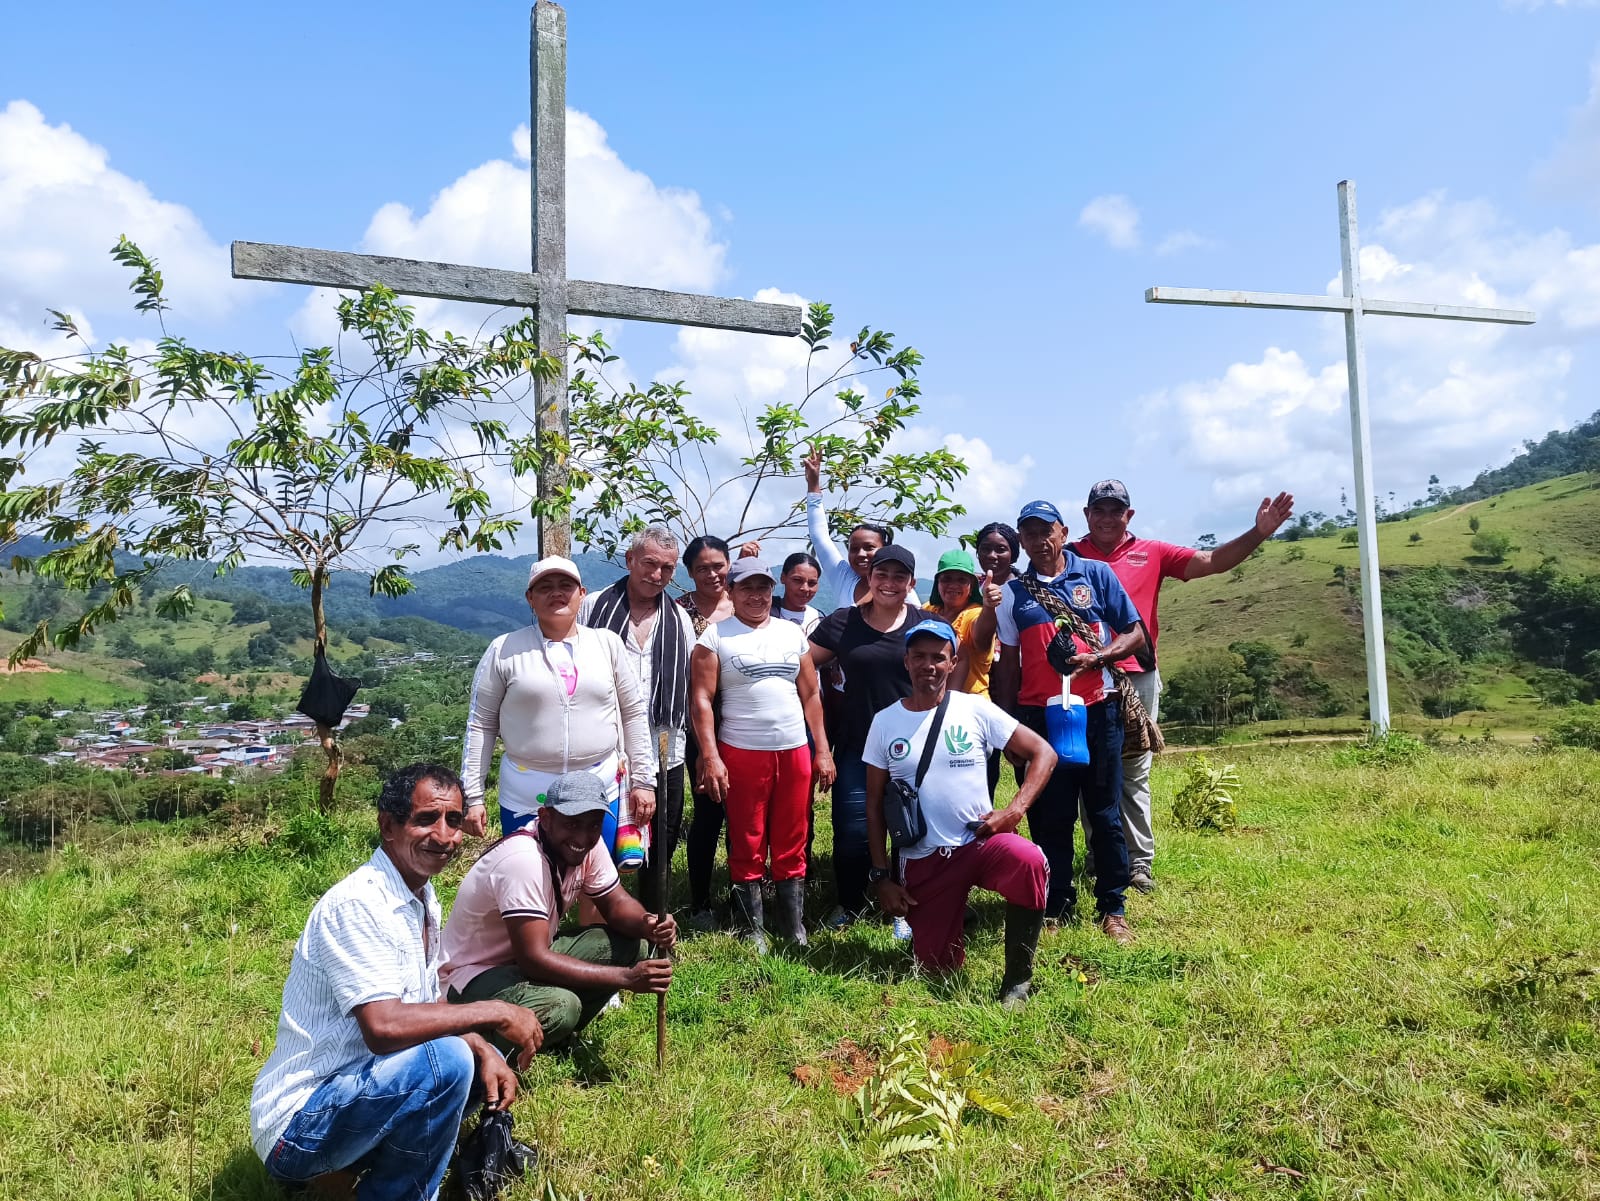 14 de personas posando para foto en zona rural con dos cruces cristianas en el fondo